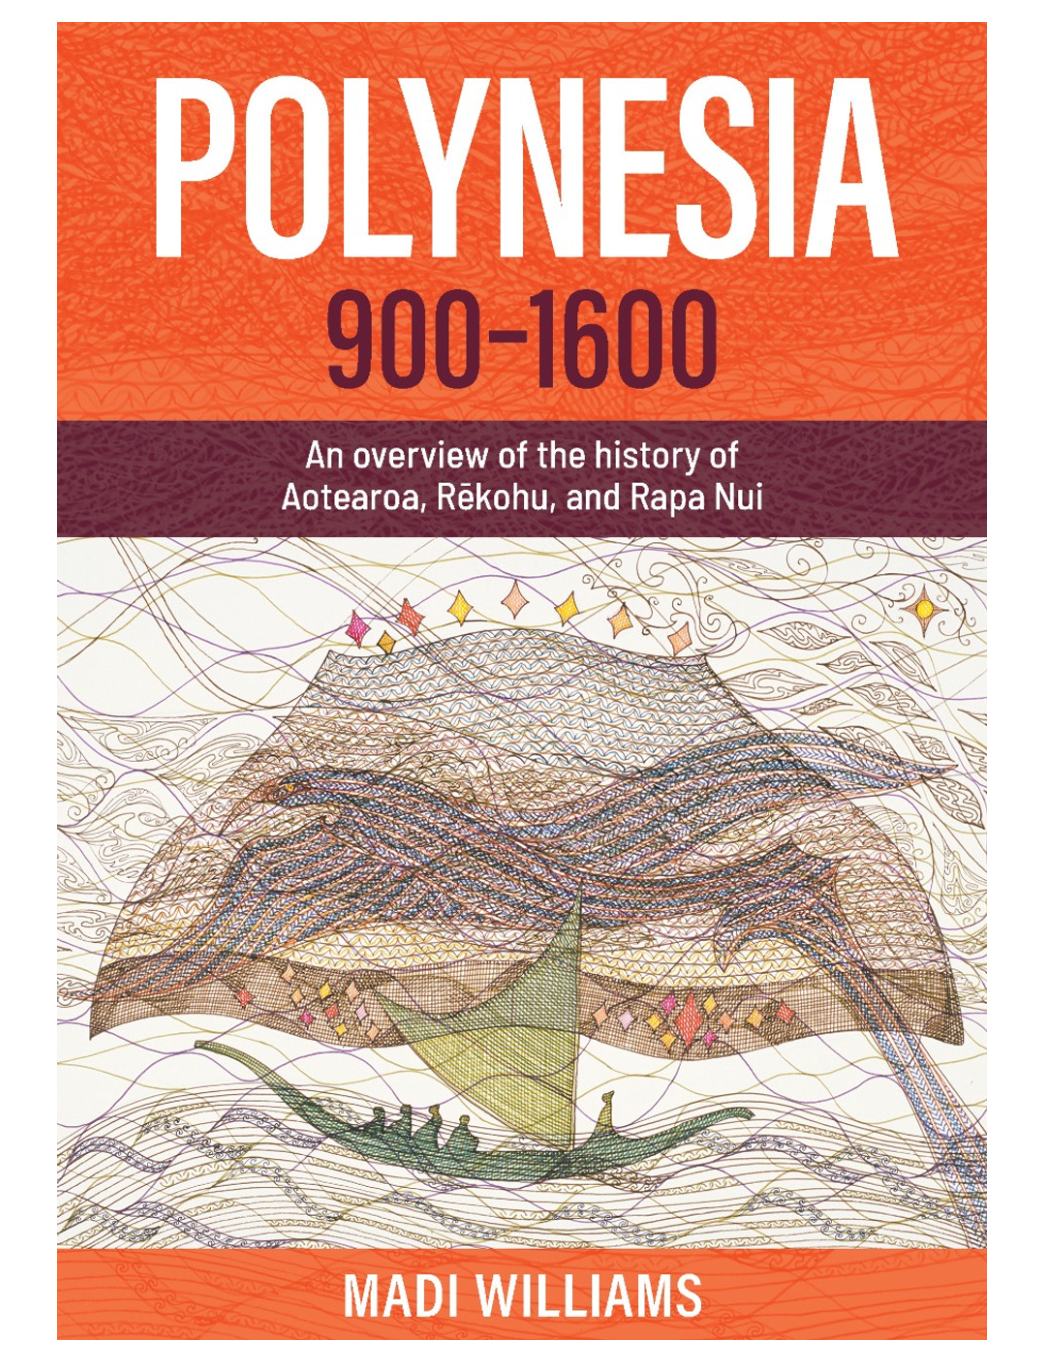 Polynesia 900-1600: An Overview of the History of Aotearoa, Rekoha and Rapa Nui